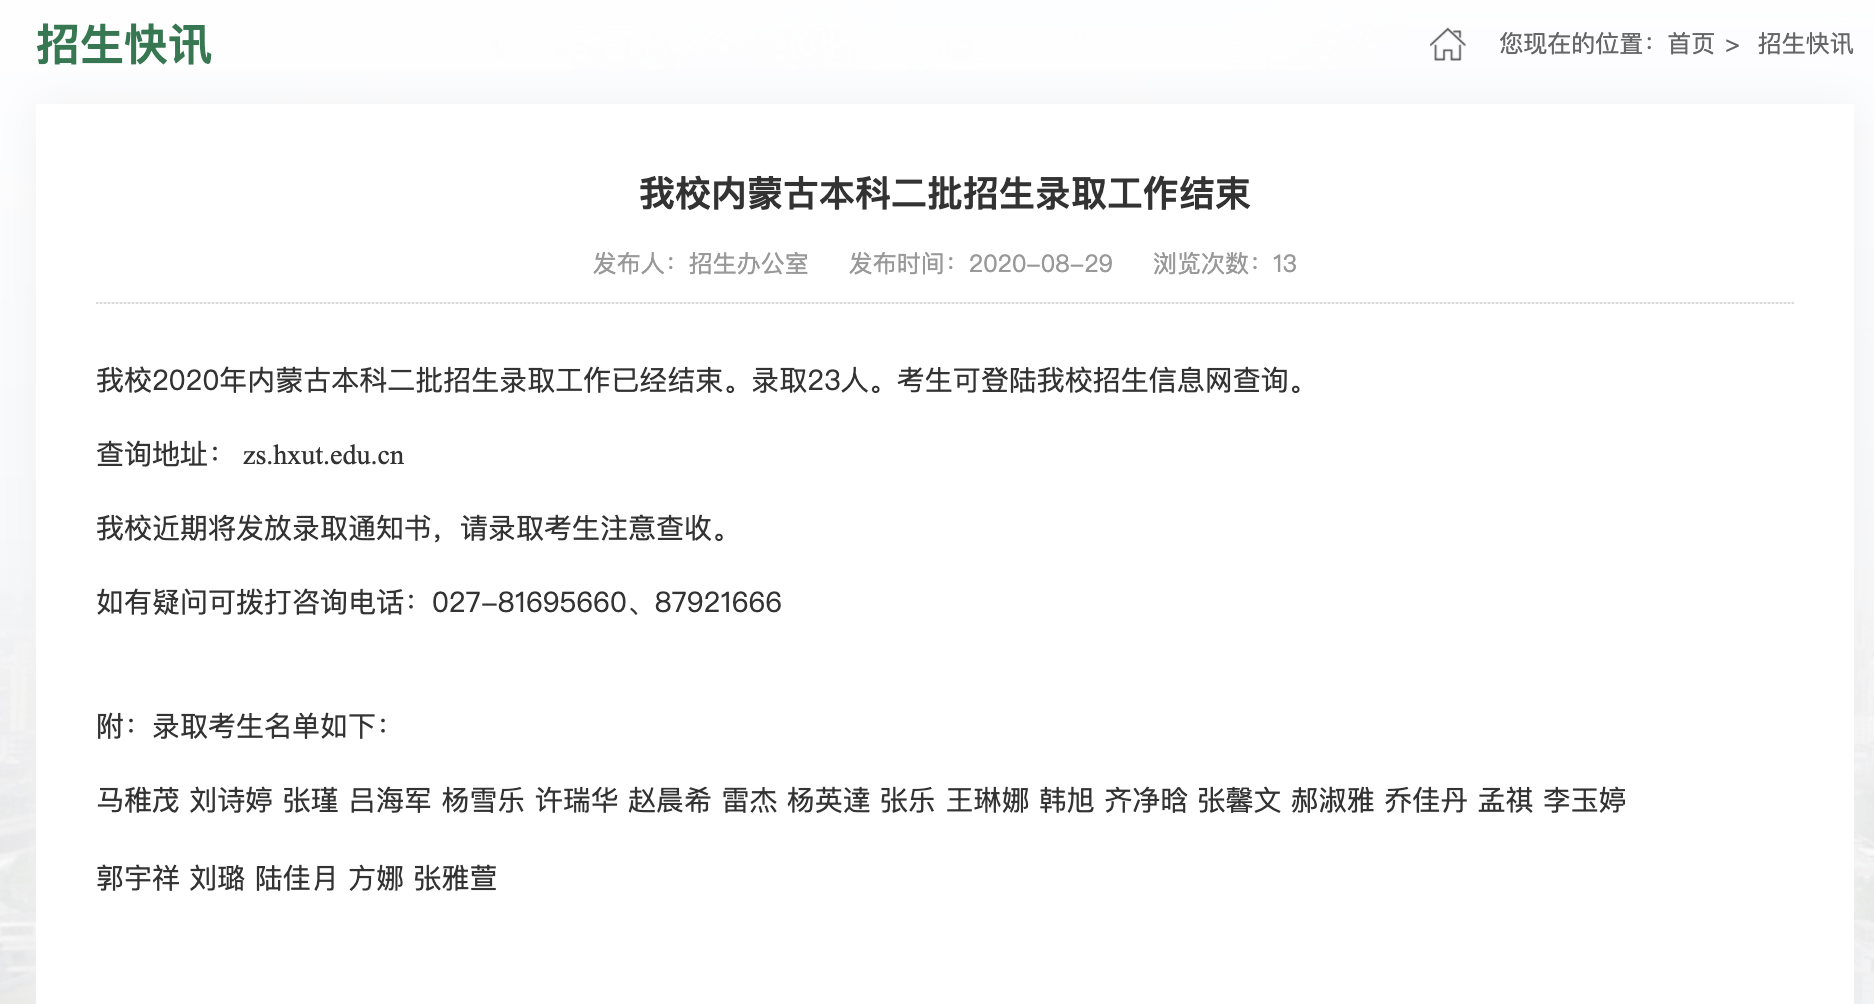 武汉华夏理工学院2020高考内蒙古本科二批招生录取查询及录取名单